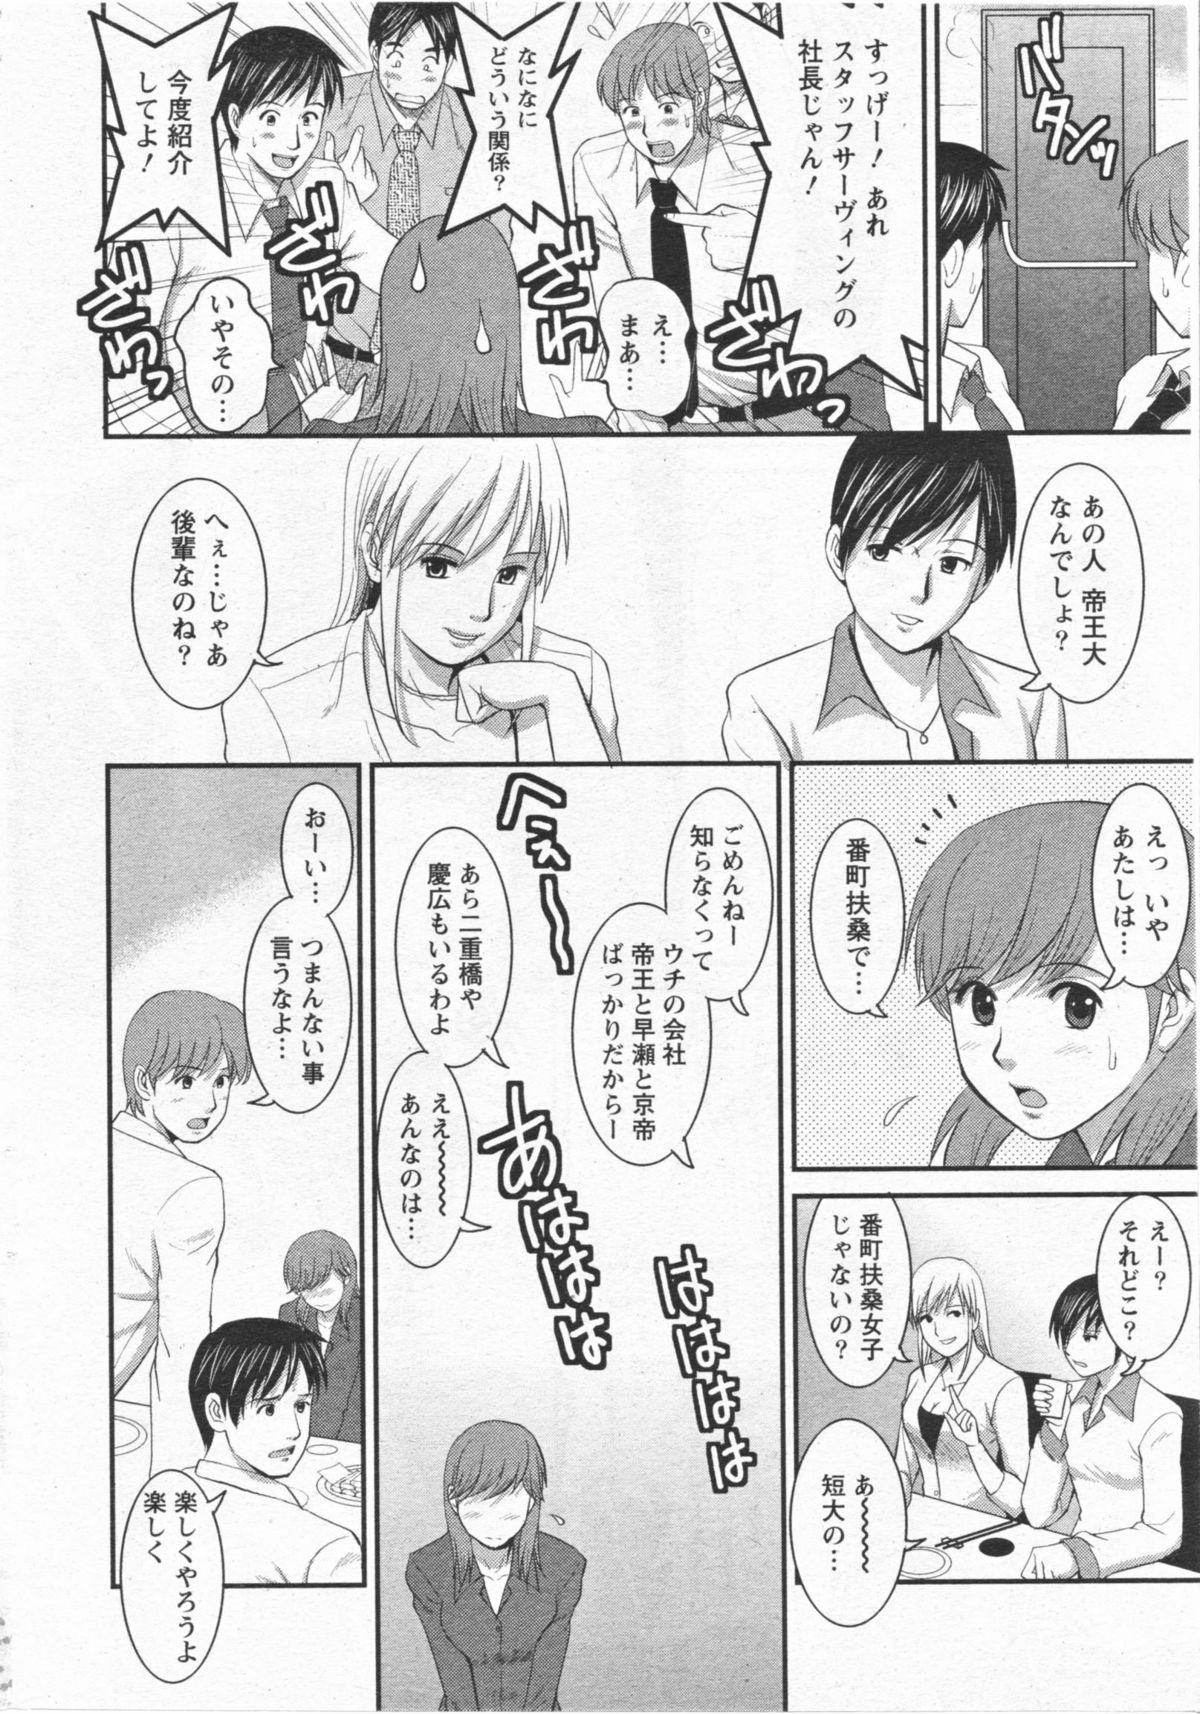 [Saigado] Haken no Muuko San 11 page 11 full